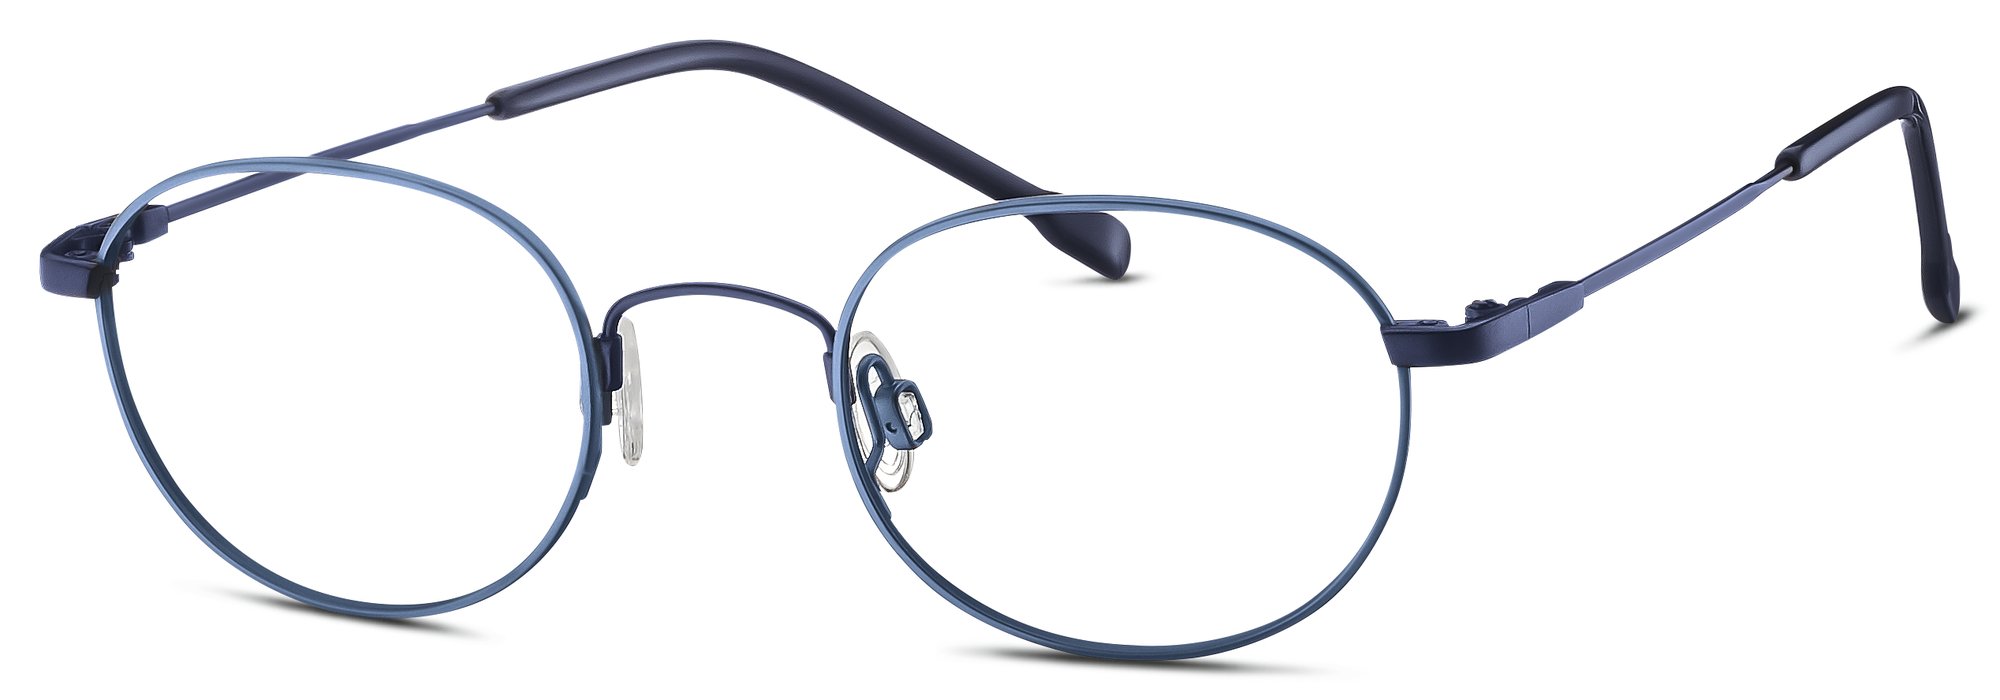 Das Bild zeigt die Korrektionsbrille 830111 75 von der Marke Titanflex Kids in  blau.